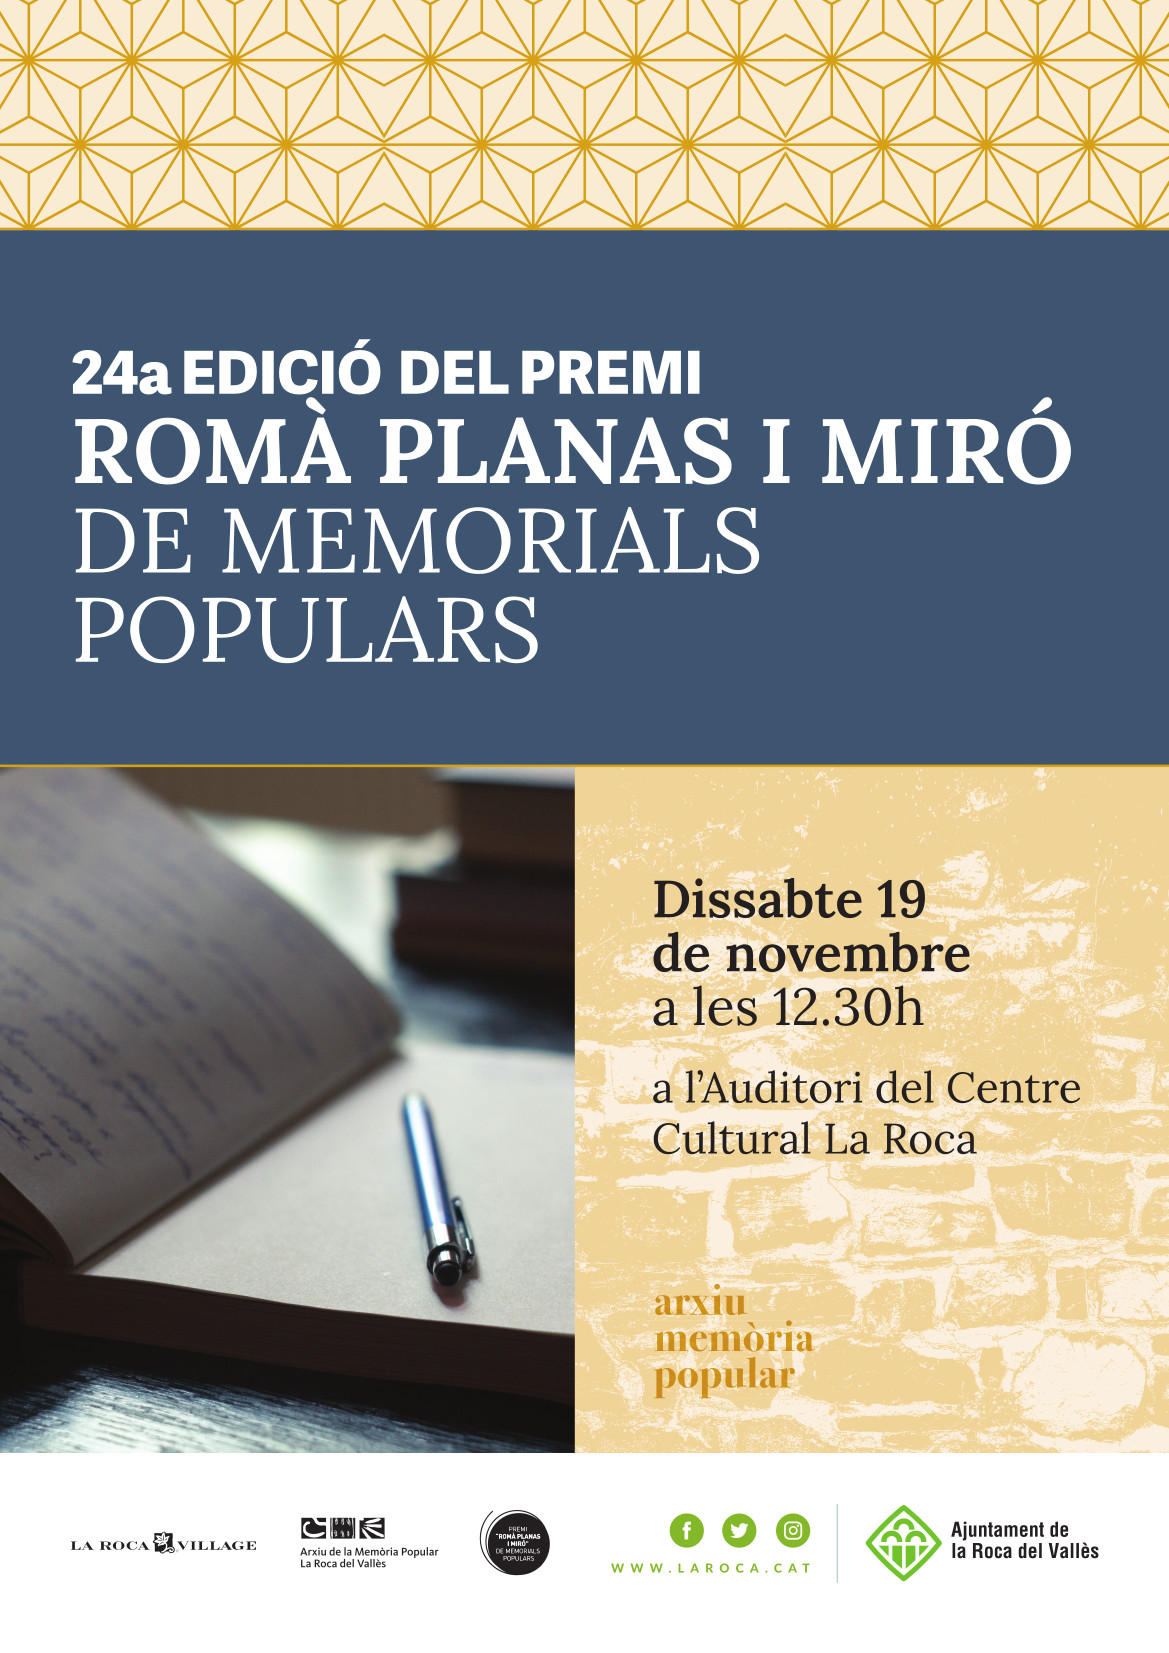 La Roca del Vallès torna a posar en valor la memòria popular amb la 24a edició del Premi Romà Planas i Miró